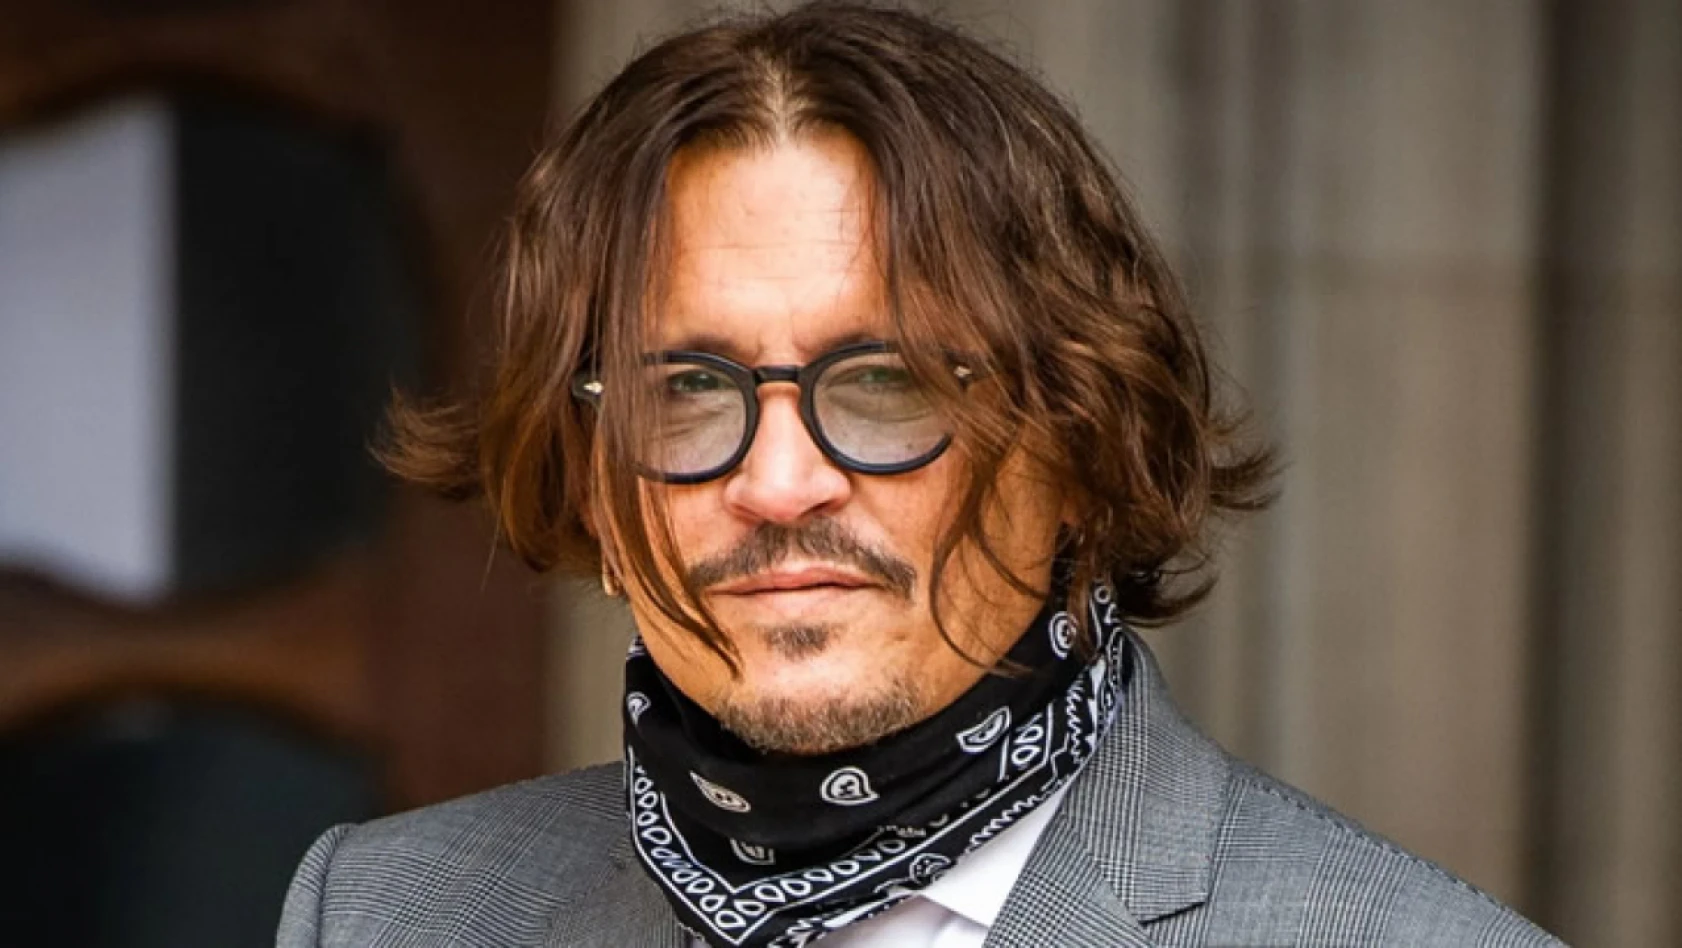 Oyuncu Johnny Depp intihar girişiminde mi bulundu? Açıklama geldi!